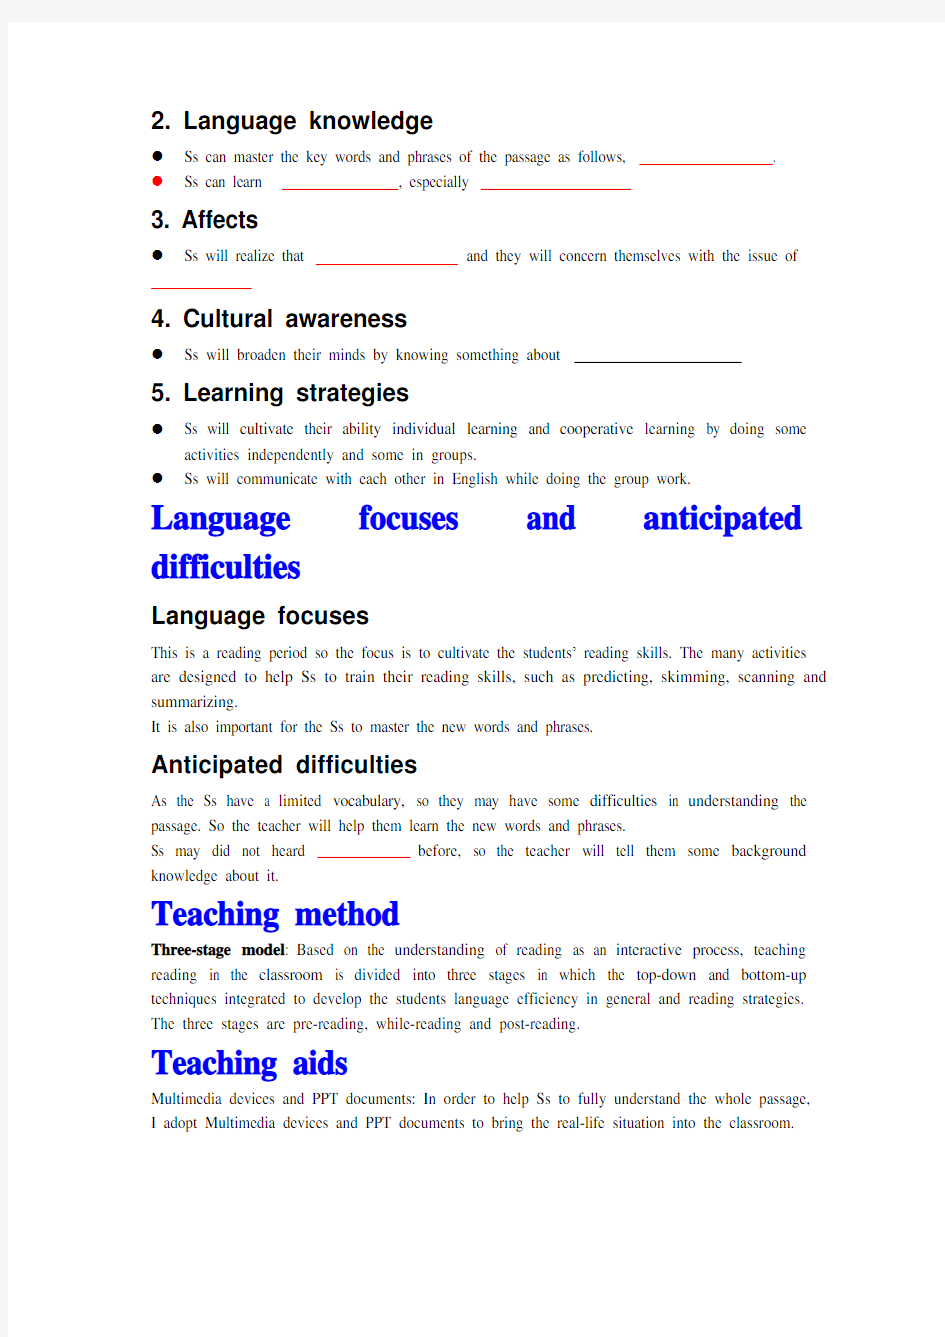 全英文英语教案模板 (2)